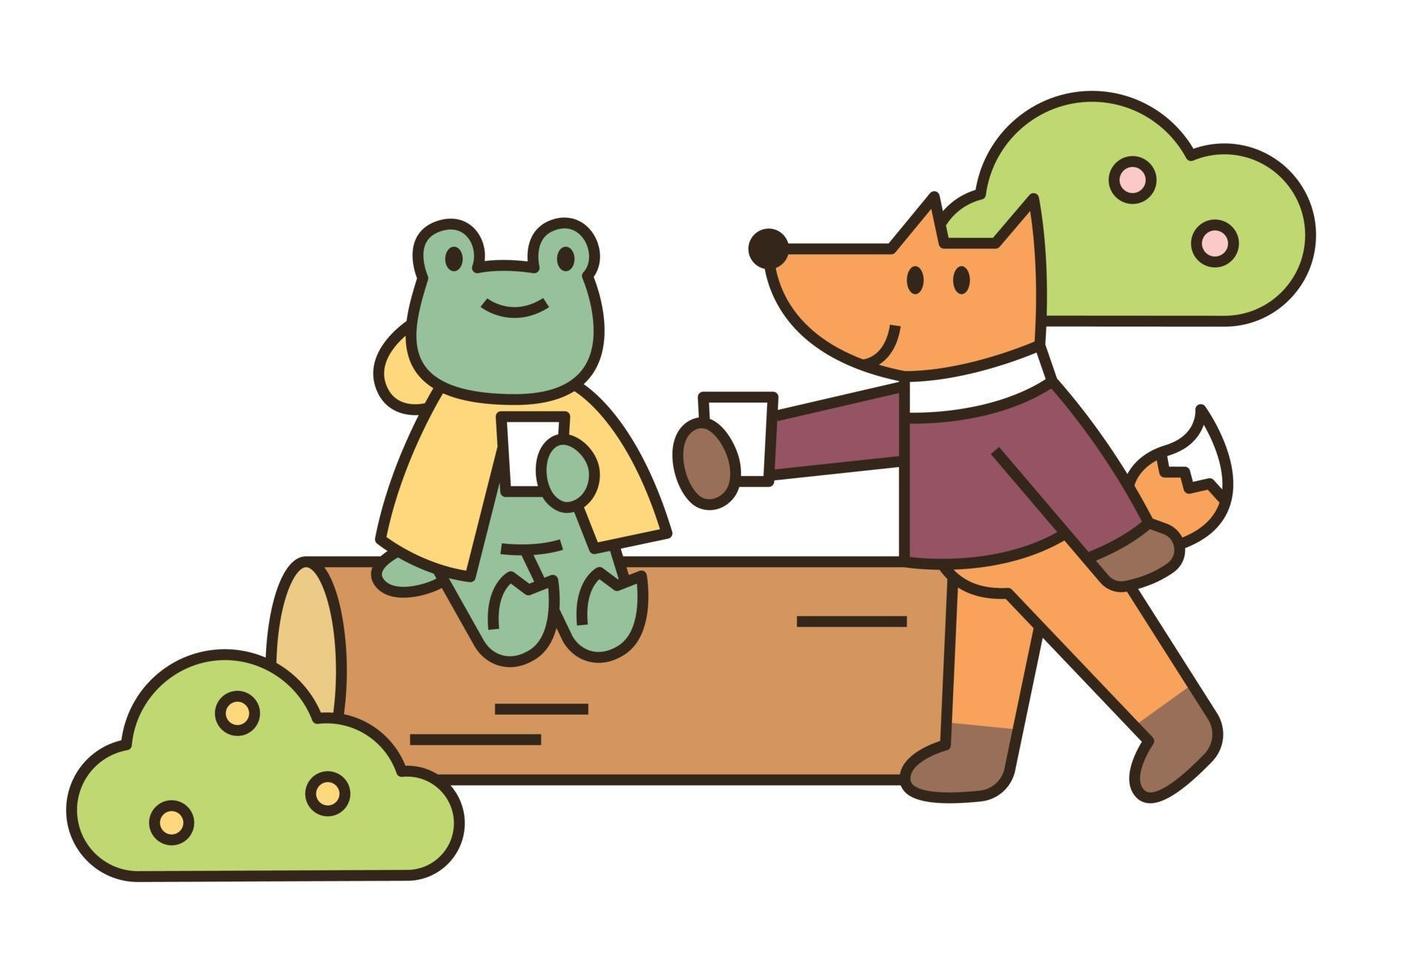 una rana e una volpe stanno riposando su un tronco. illustrazione di vettore minimo di stile di design piatto.